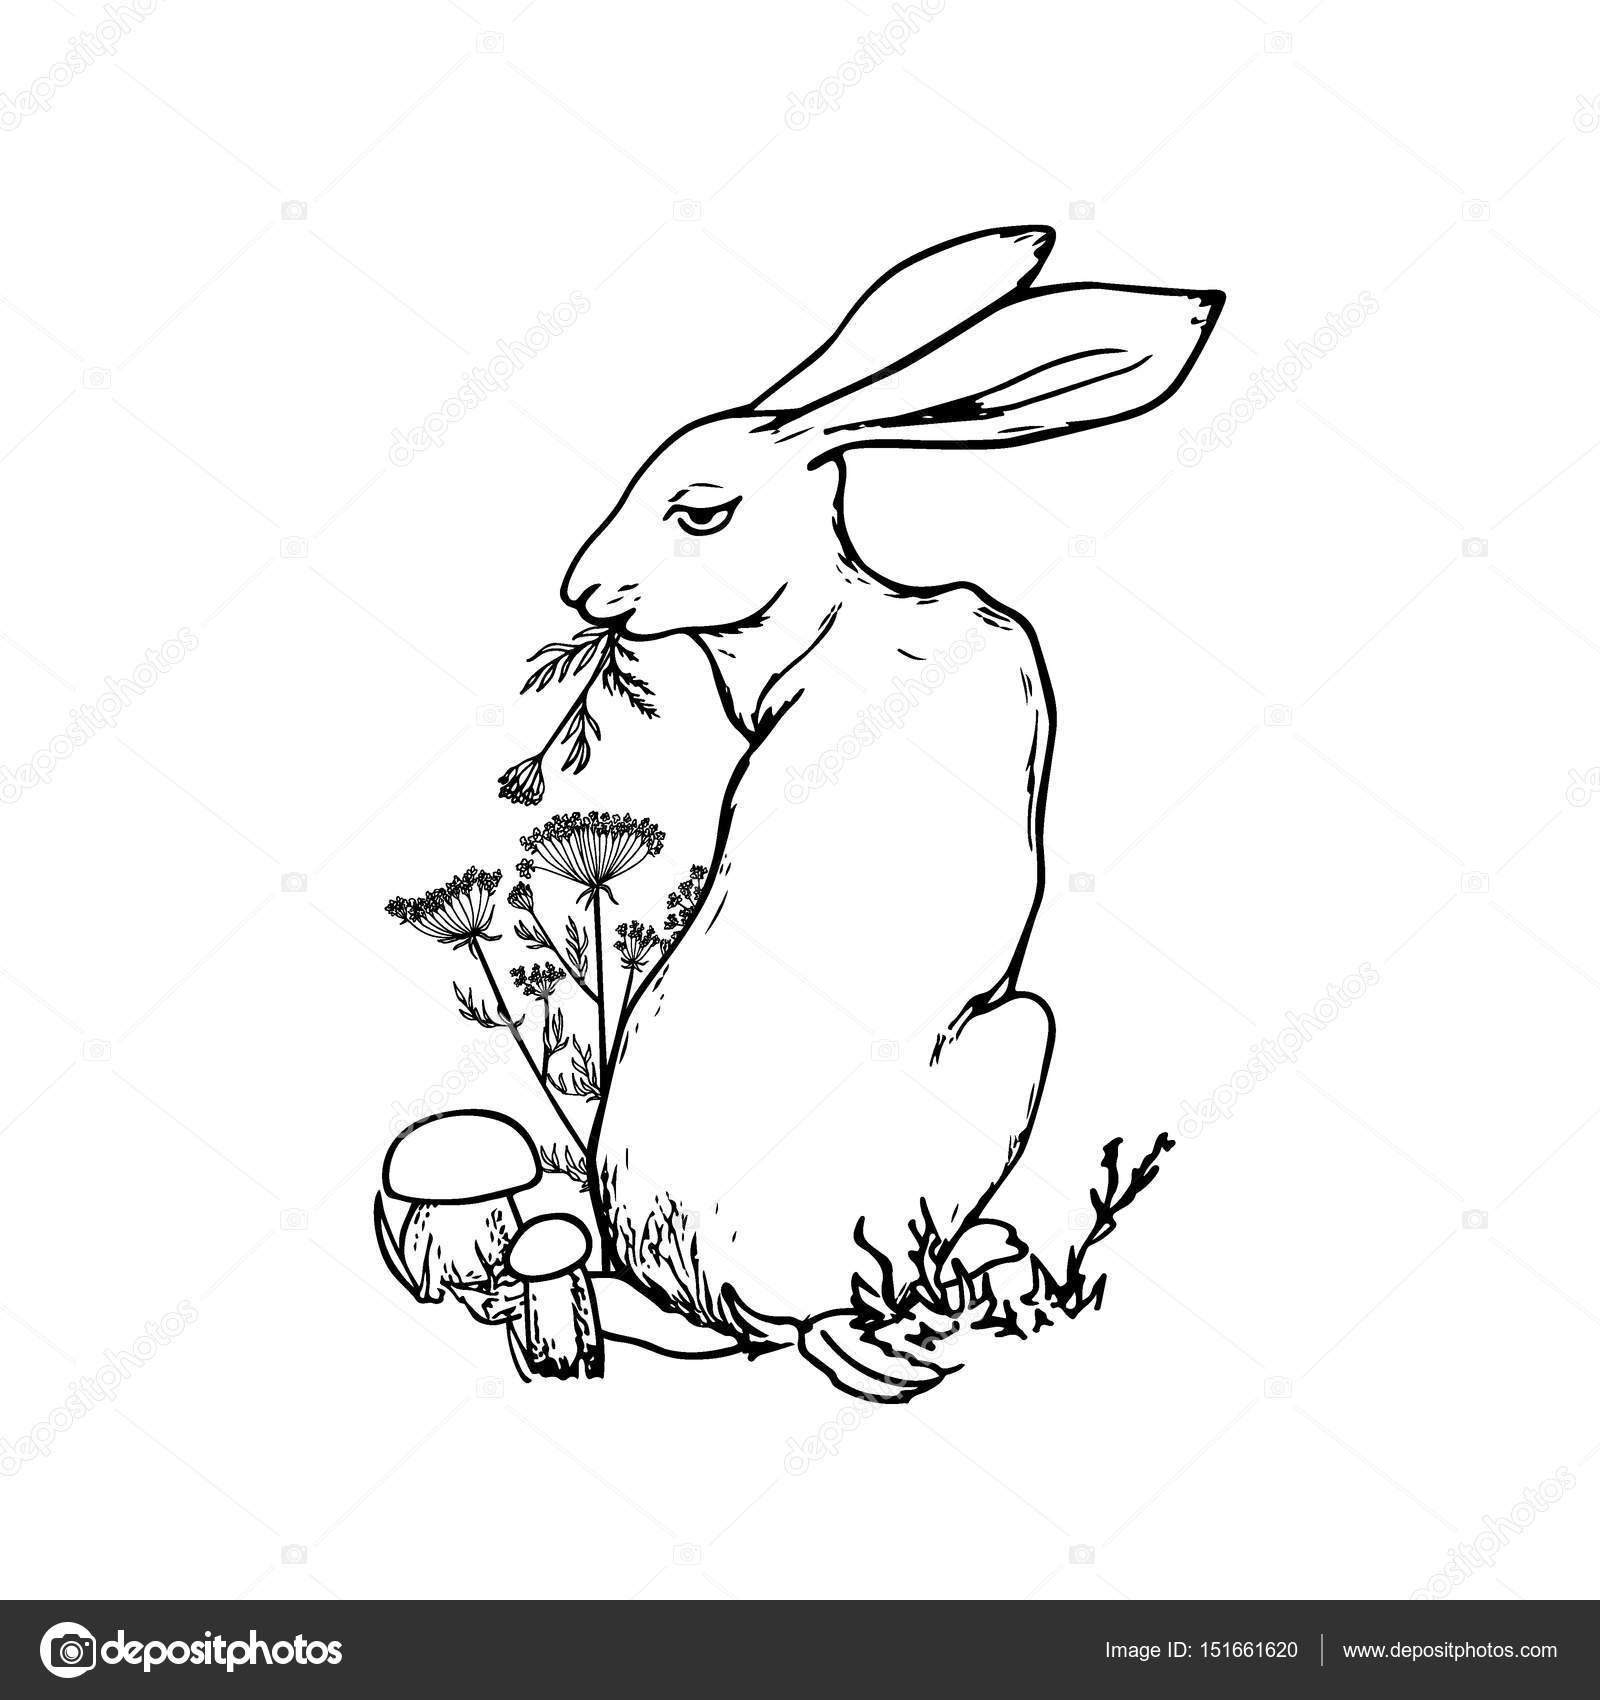 Заяц ест траву рисунок